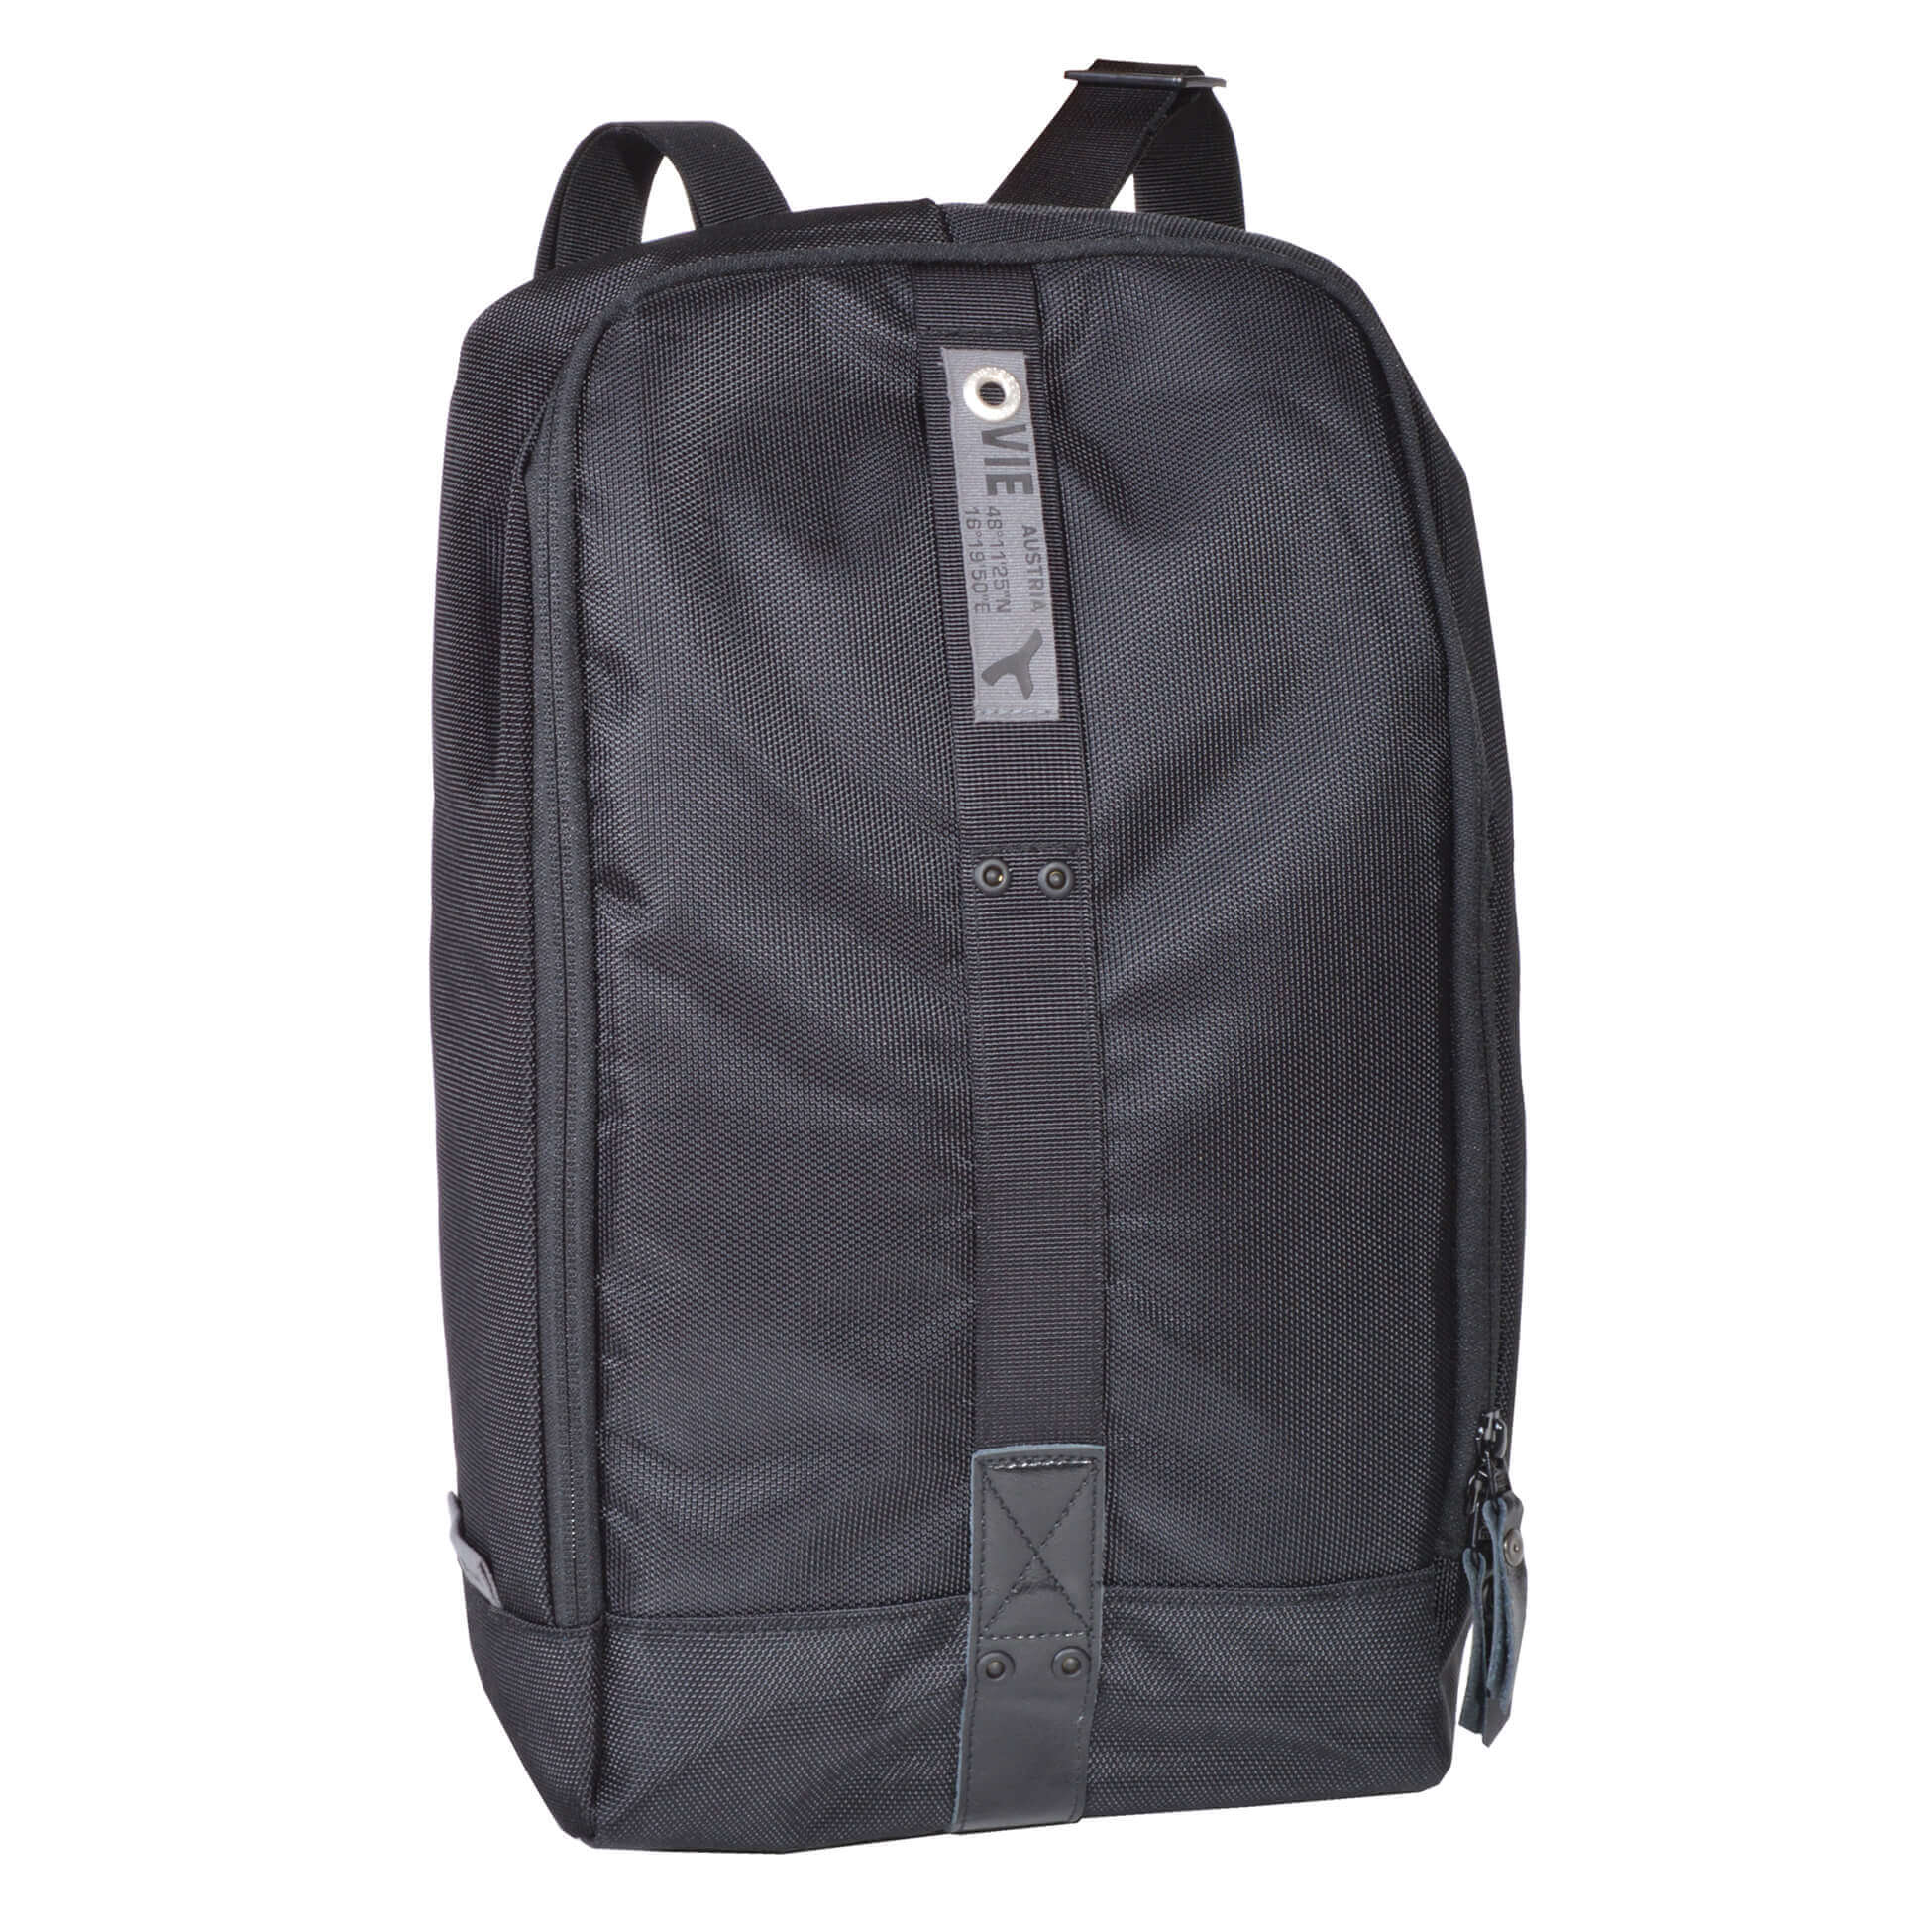 sling bag backpack super slim and super light weight - piggyBack